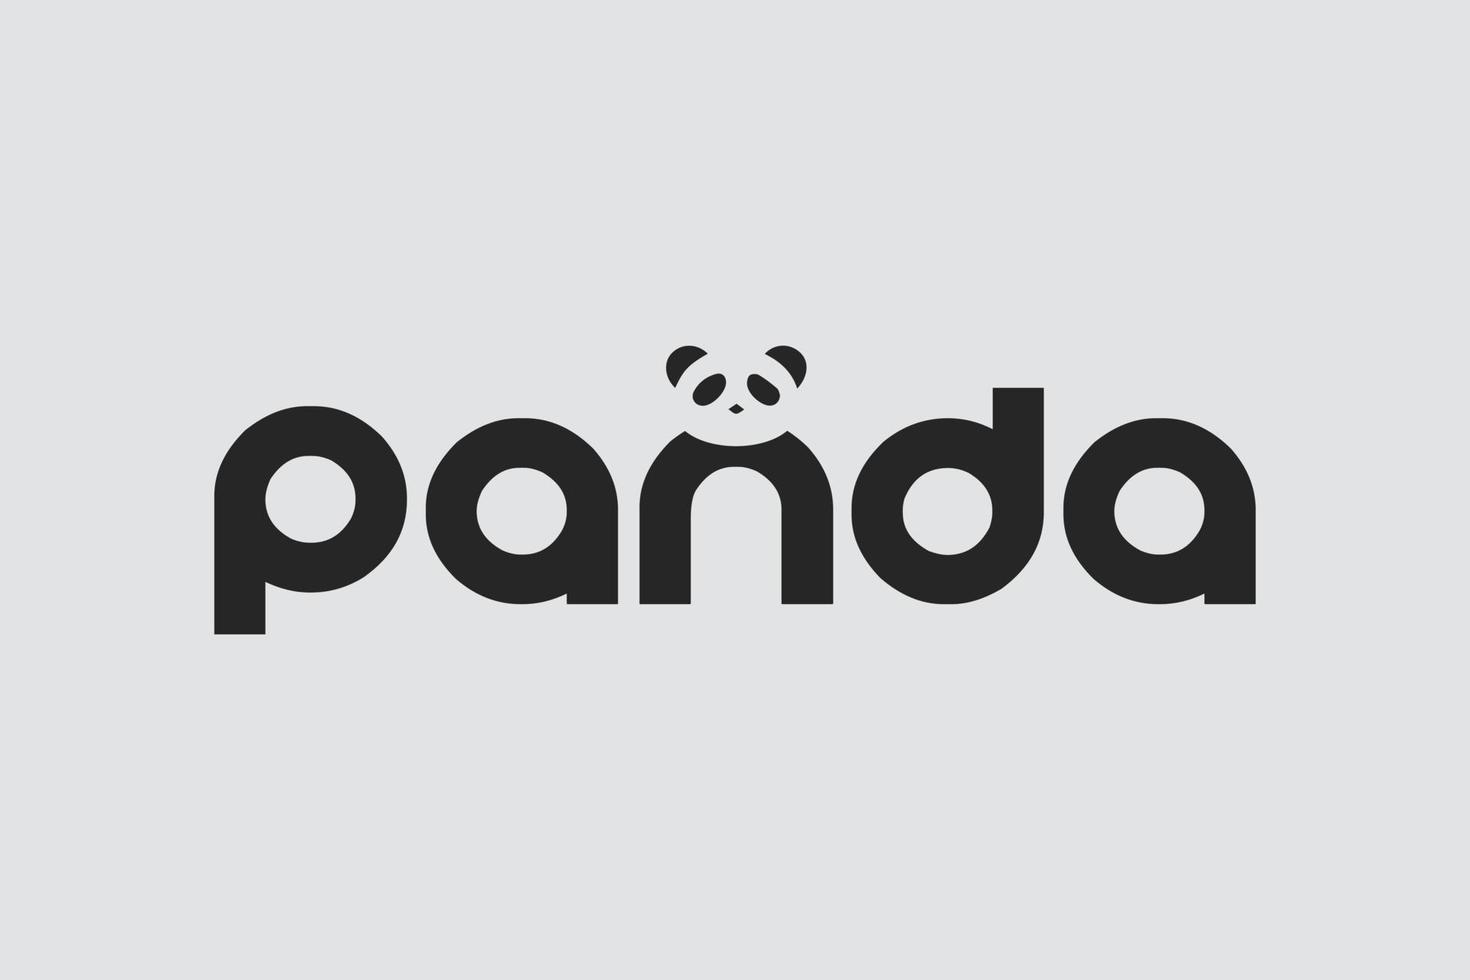 plantilla de vector de diseño de logotipo de silueta de oso panda.